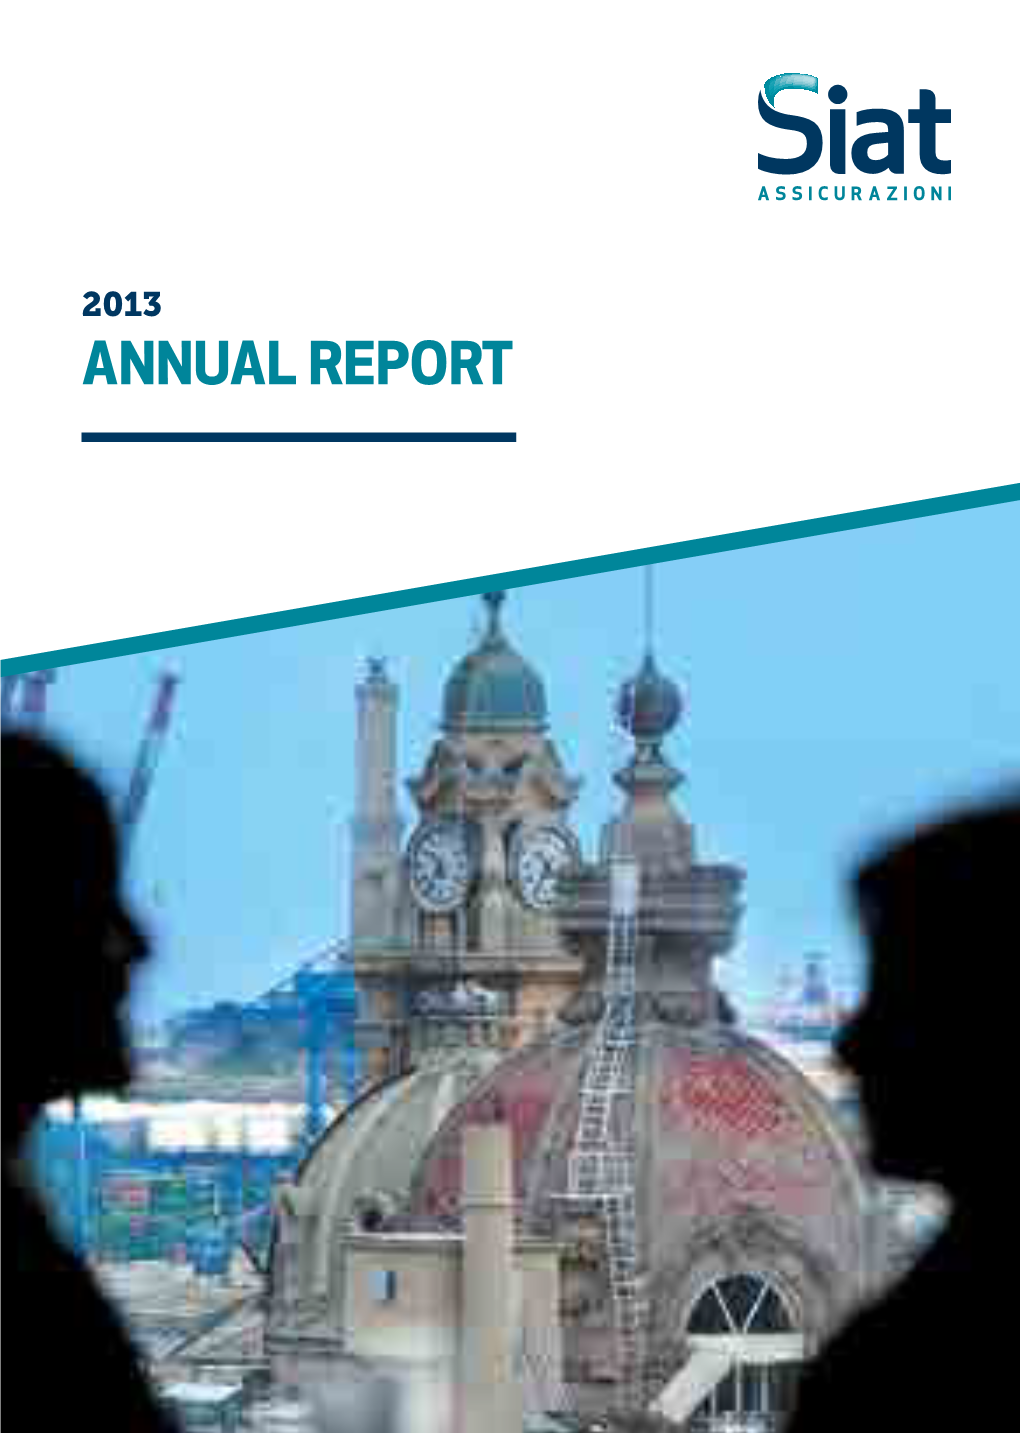 Annual Report Annual Report 2013 Annual Assicurazioni Siat